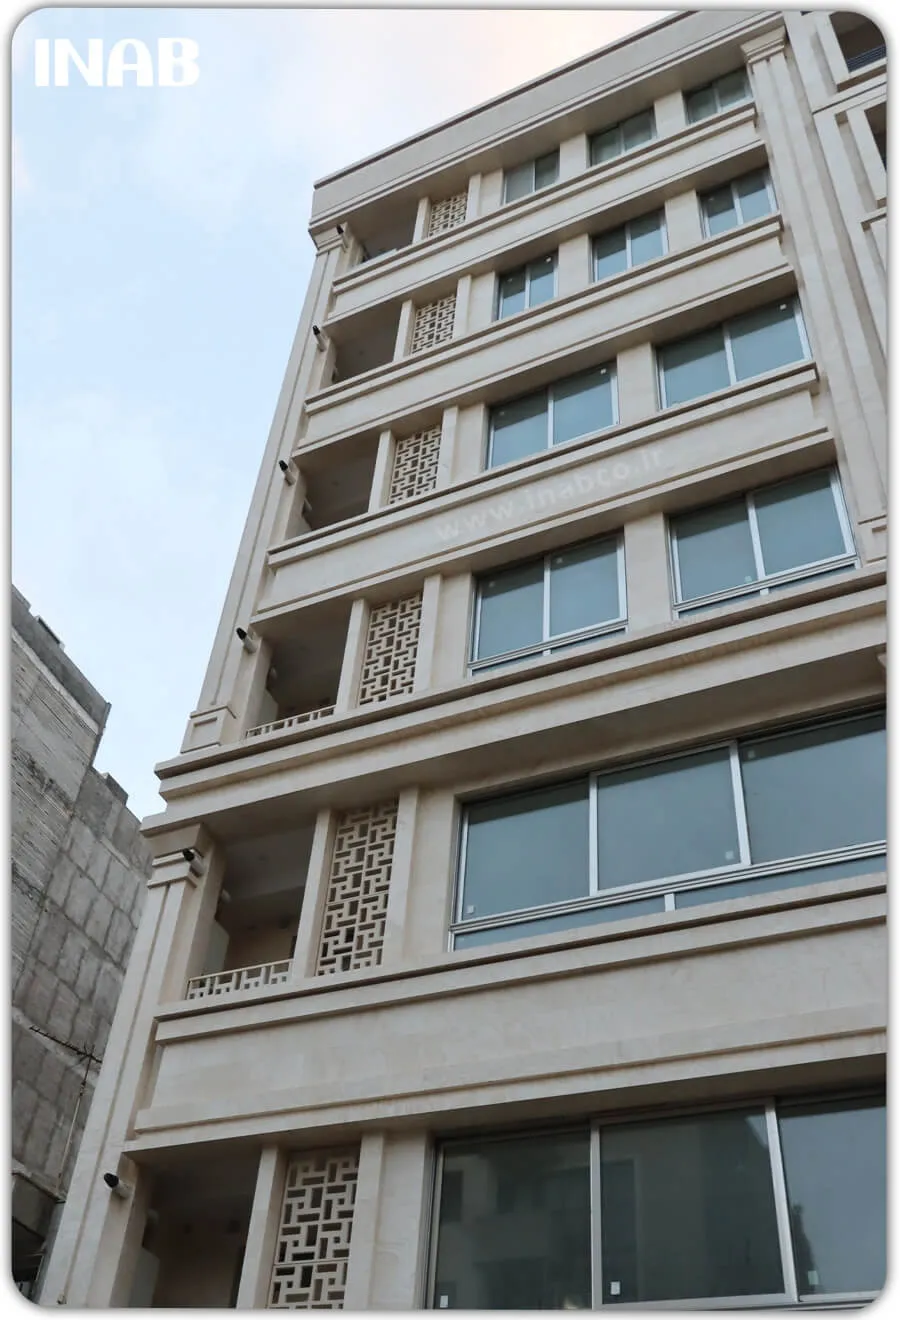 نمای ساختمان 5 طبقه - نمای ساختمان مسکونی